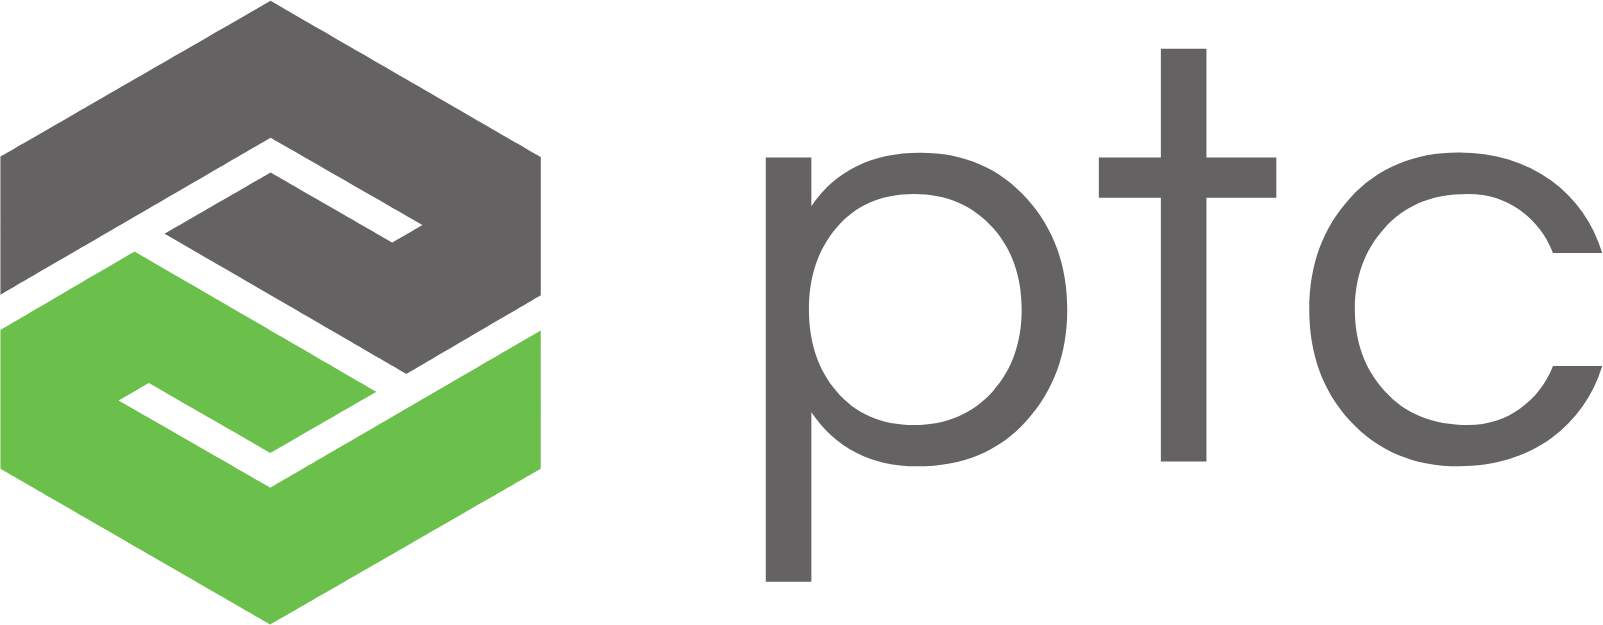 PTC logo large (transparent PNG)